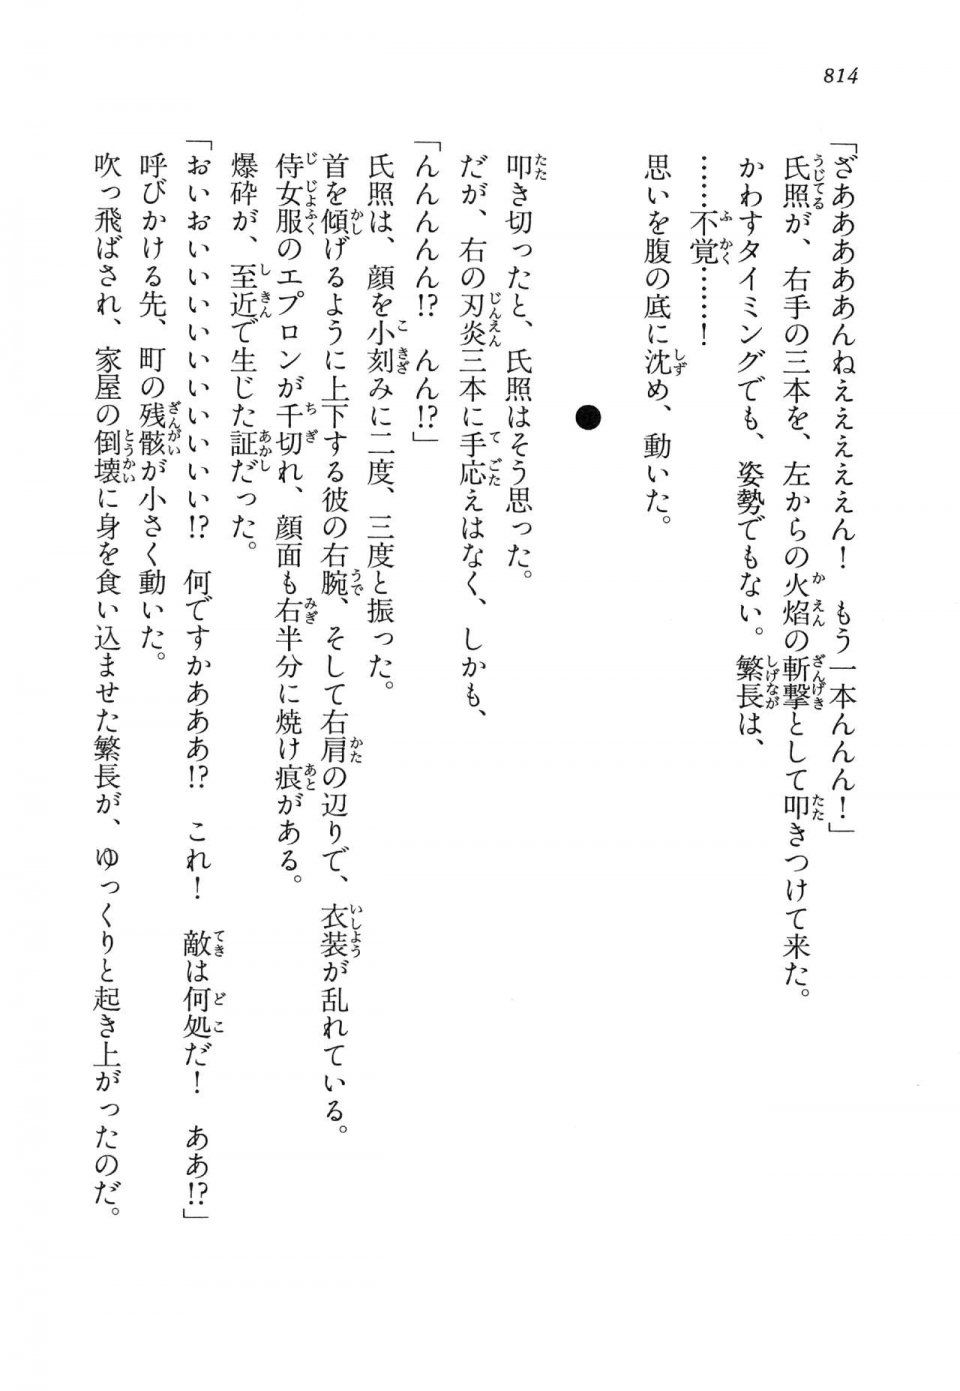 Kyoukai Senjou no Horizon LN Vol 14(6B) - Photo #814